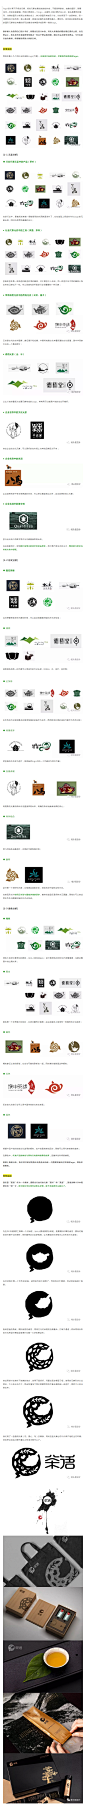 logo设计黄金法则-茶行业